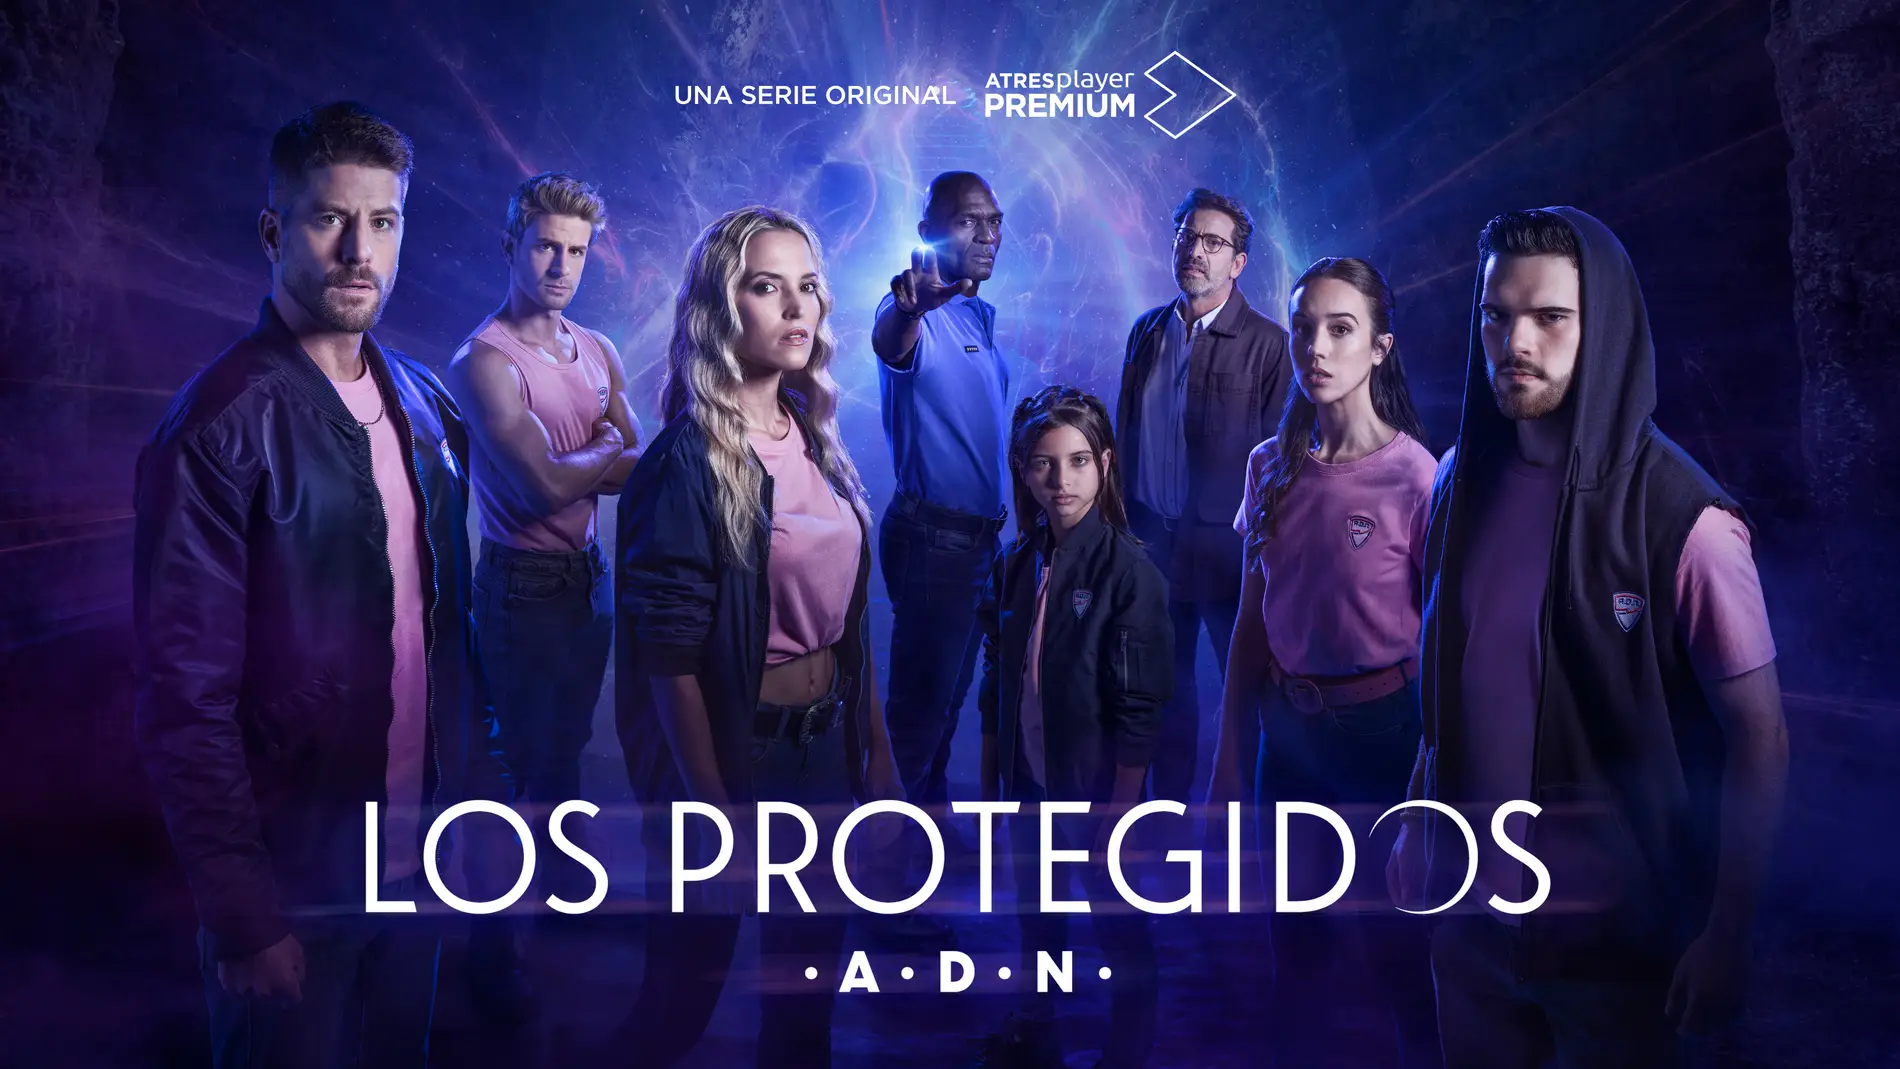 ATRESplayer PREMIUM presenta ‘Los Protegidos: A.D.N.’ en el FesTVal y lanza su cartel oficial 